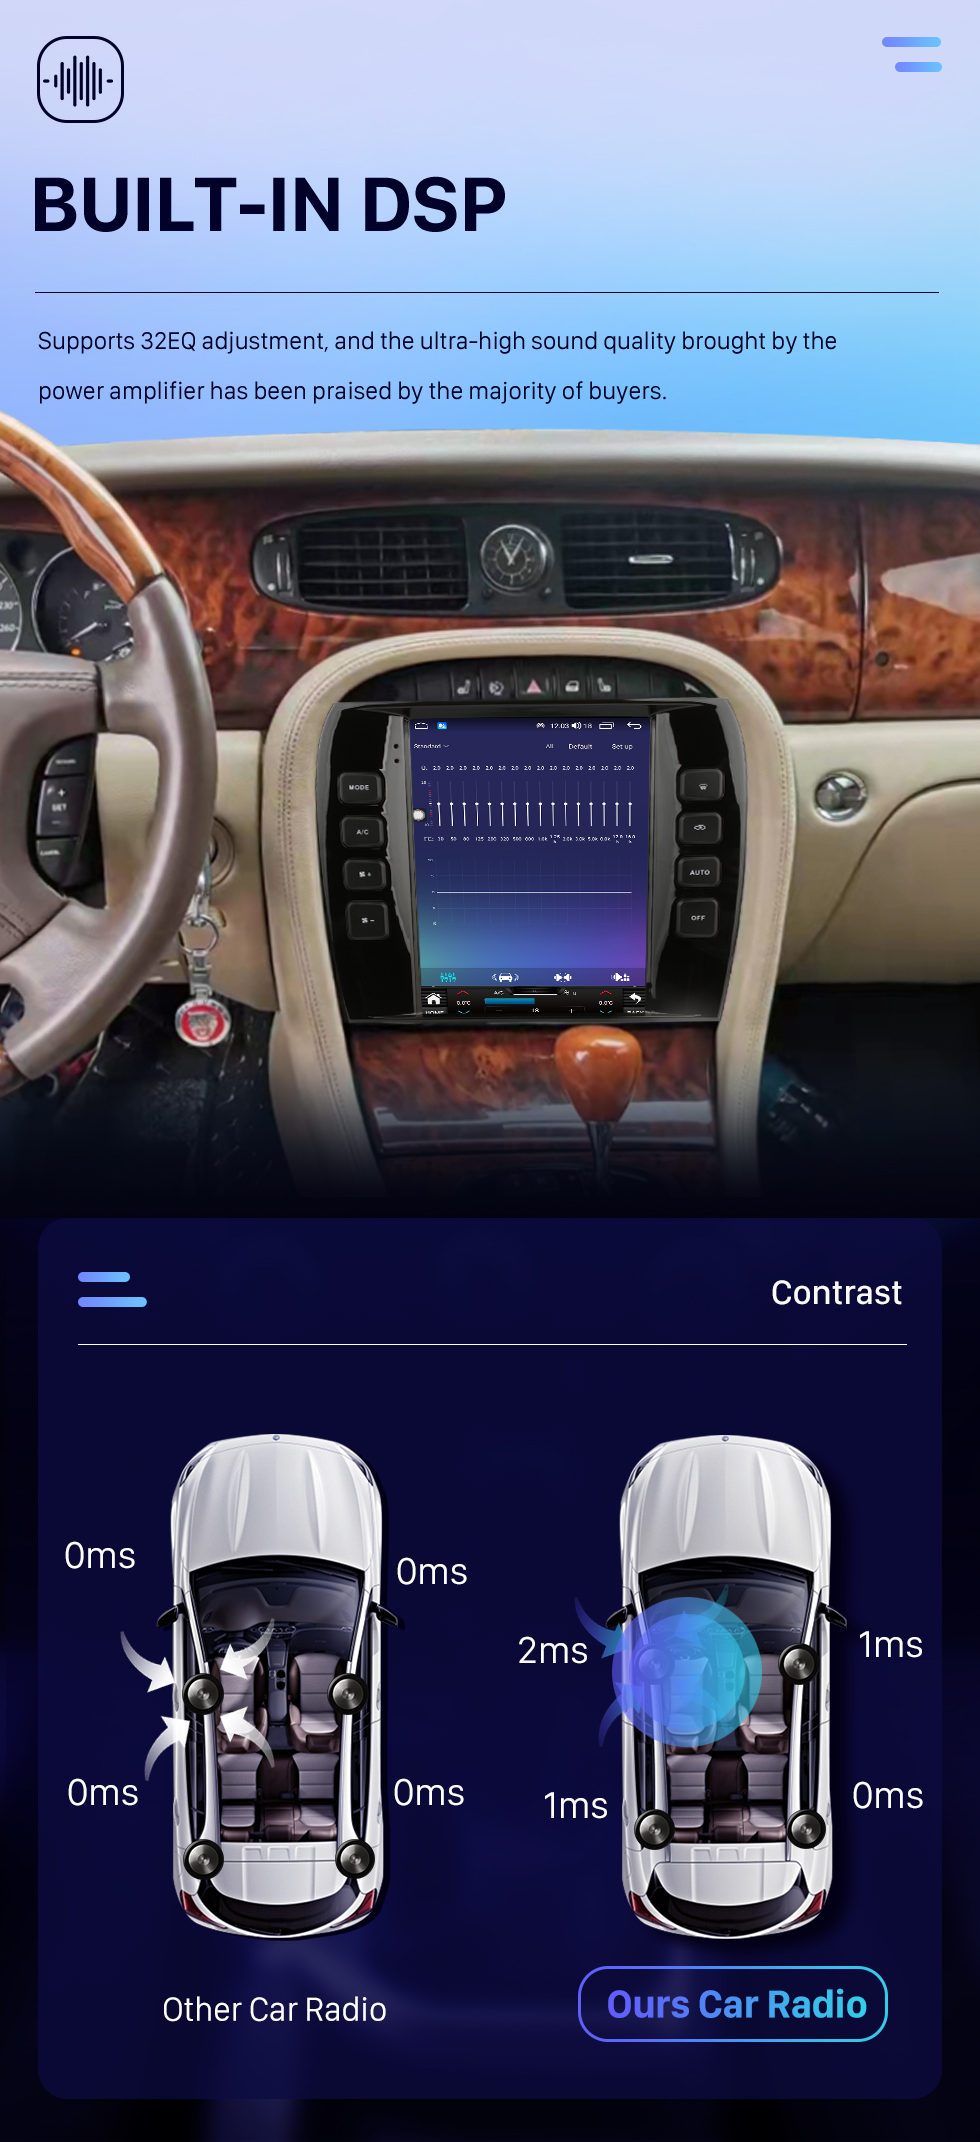 Seicane OEM 9.7 pulgadas Android 10.0 Radio de navegación GPS para Jaguar XJ 2004-2008 Estéreo con Carplay Soporte Bluetooth Cámara AHD Control del volante